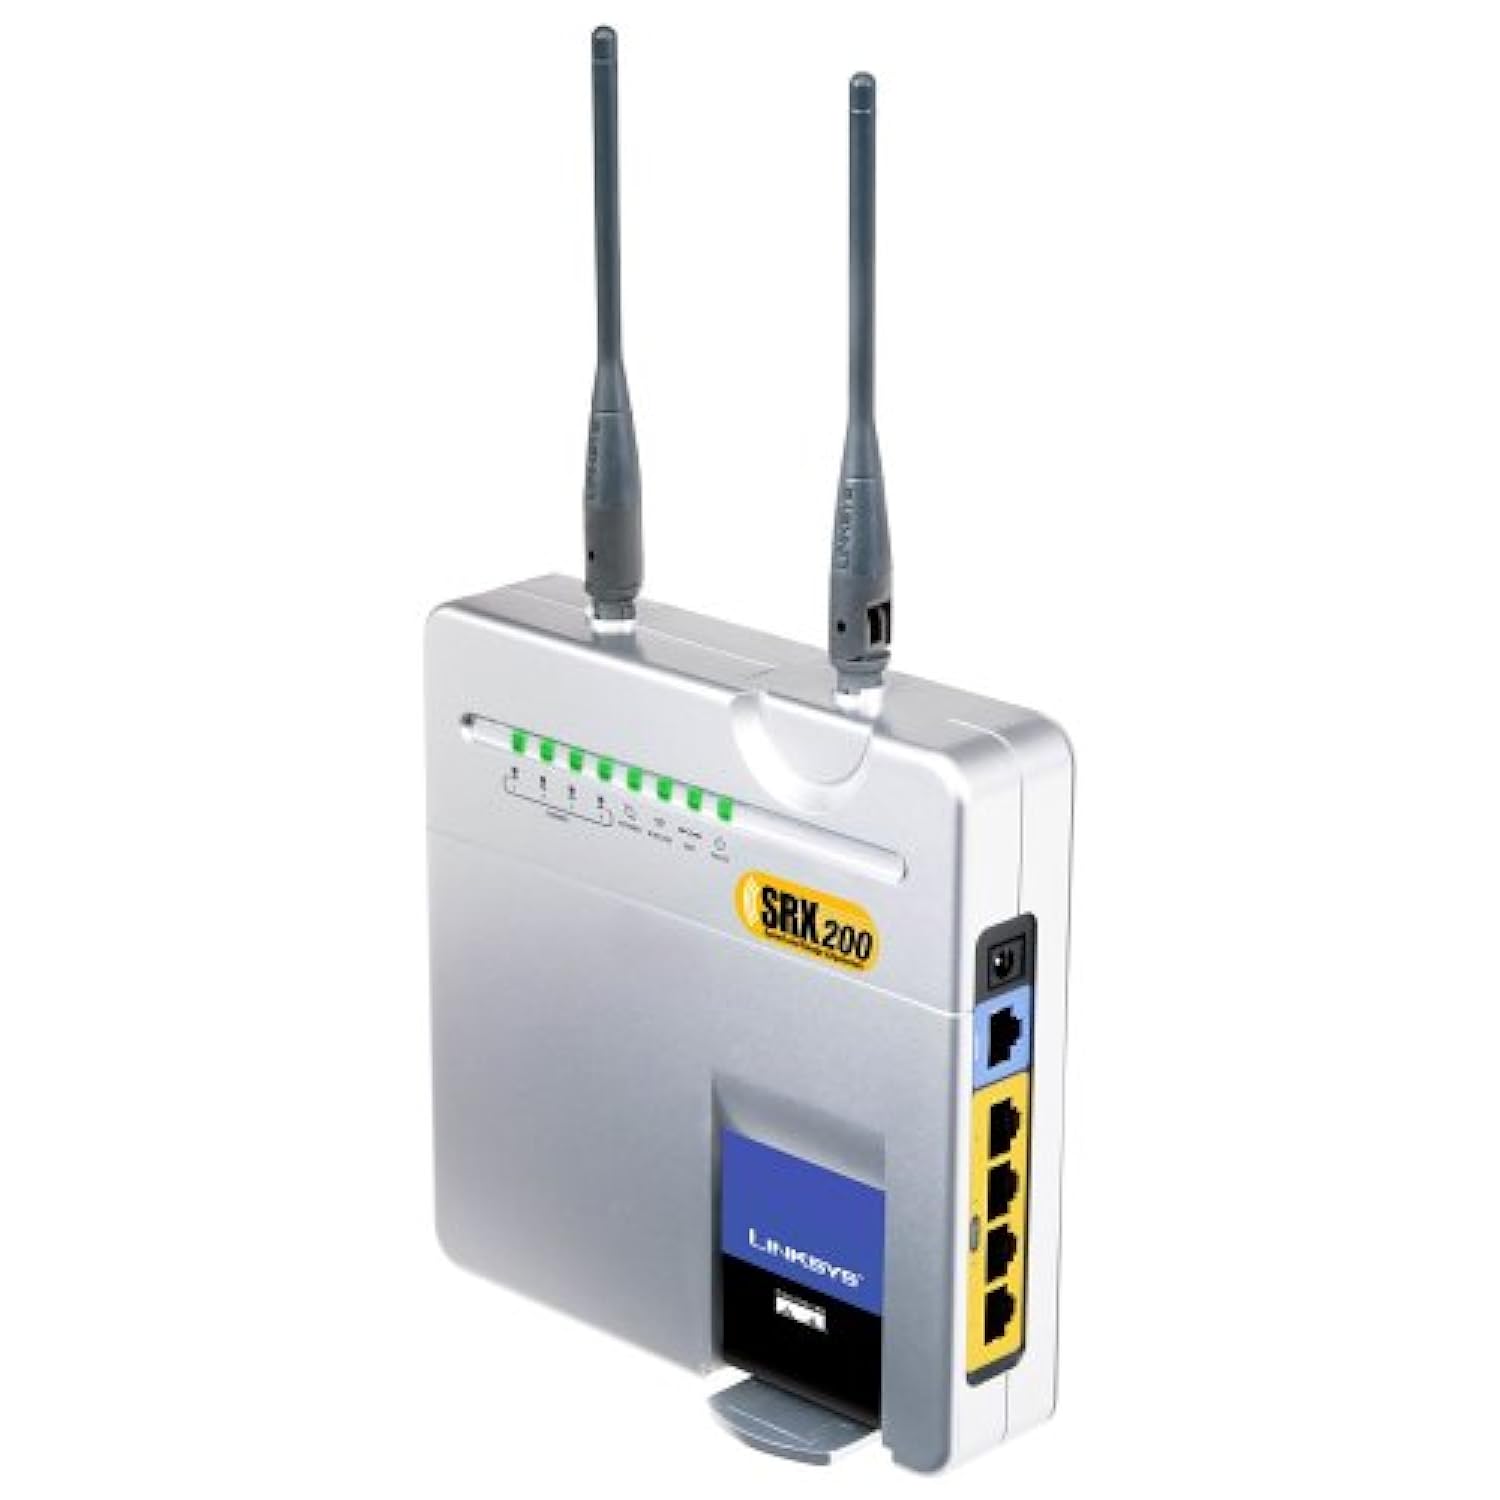 Linksys Cisco-Linksys Wireless-G Broadband Router with SRX200 (WRT54GX2)